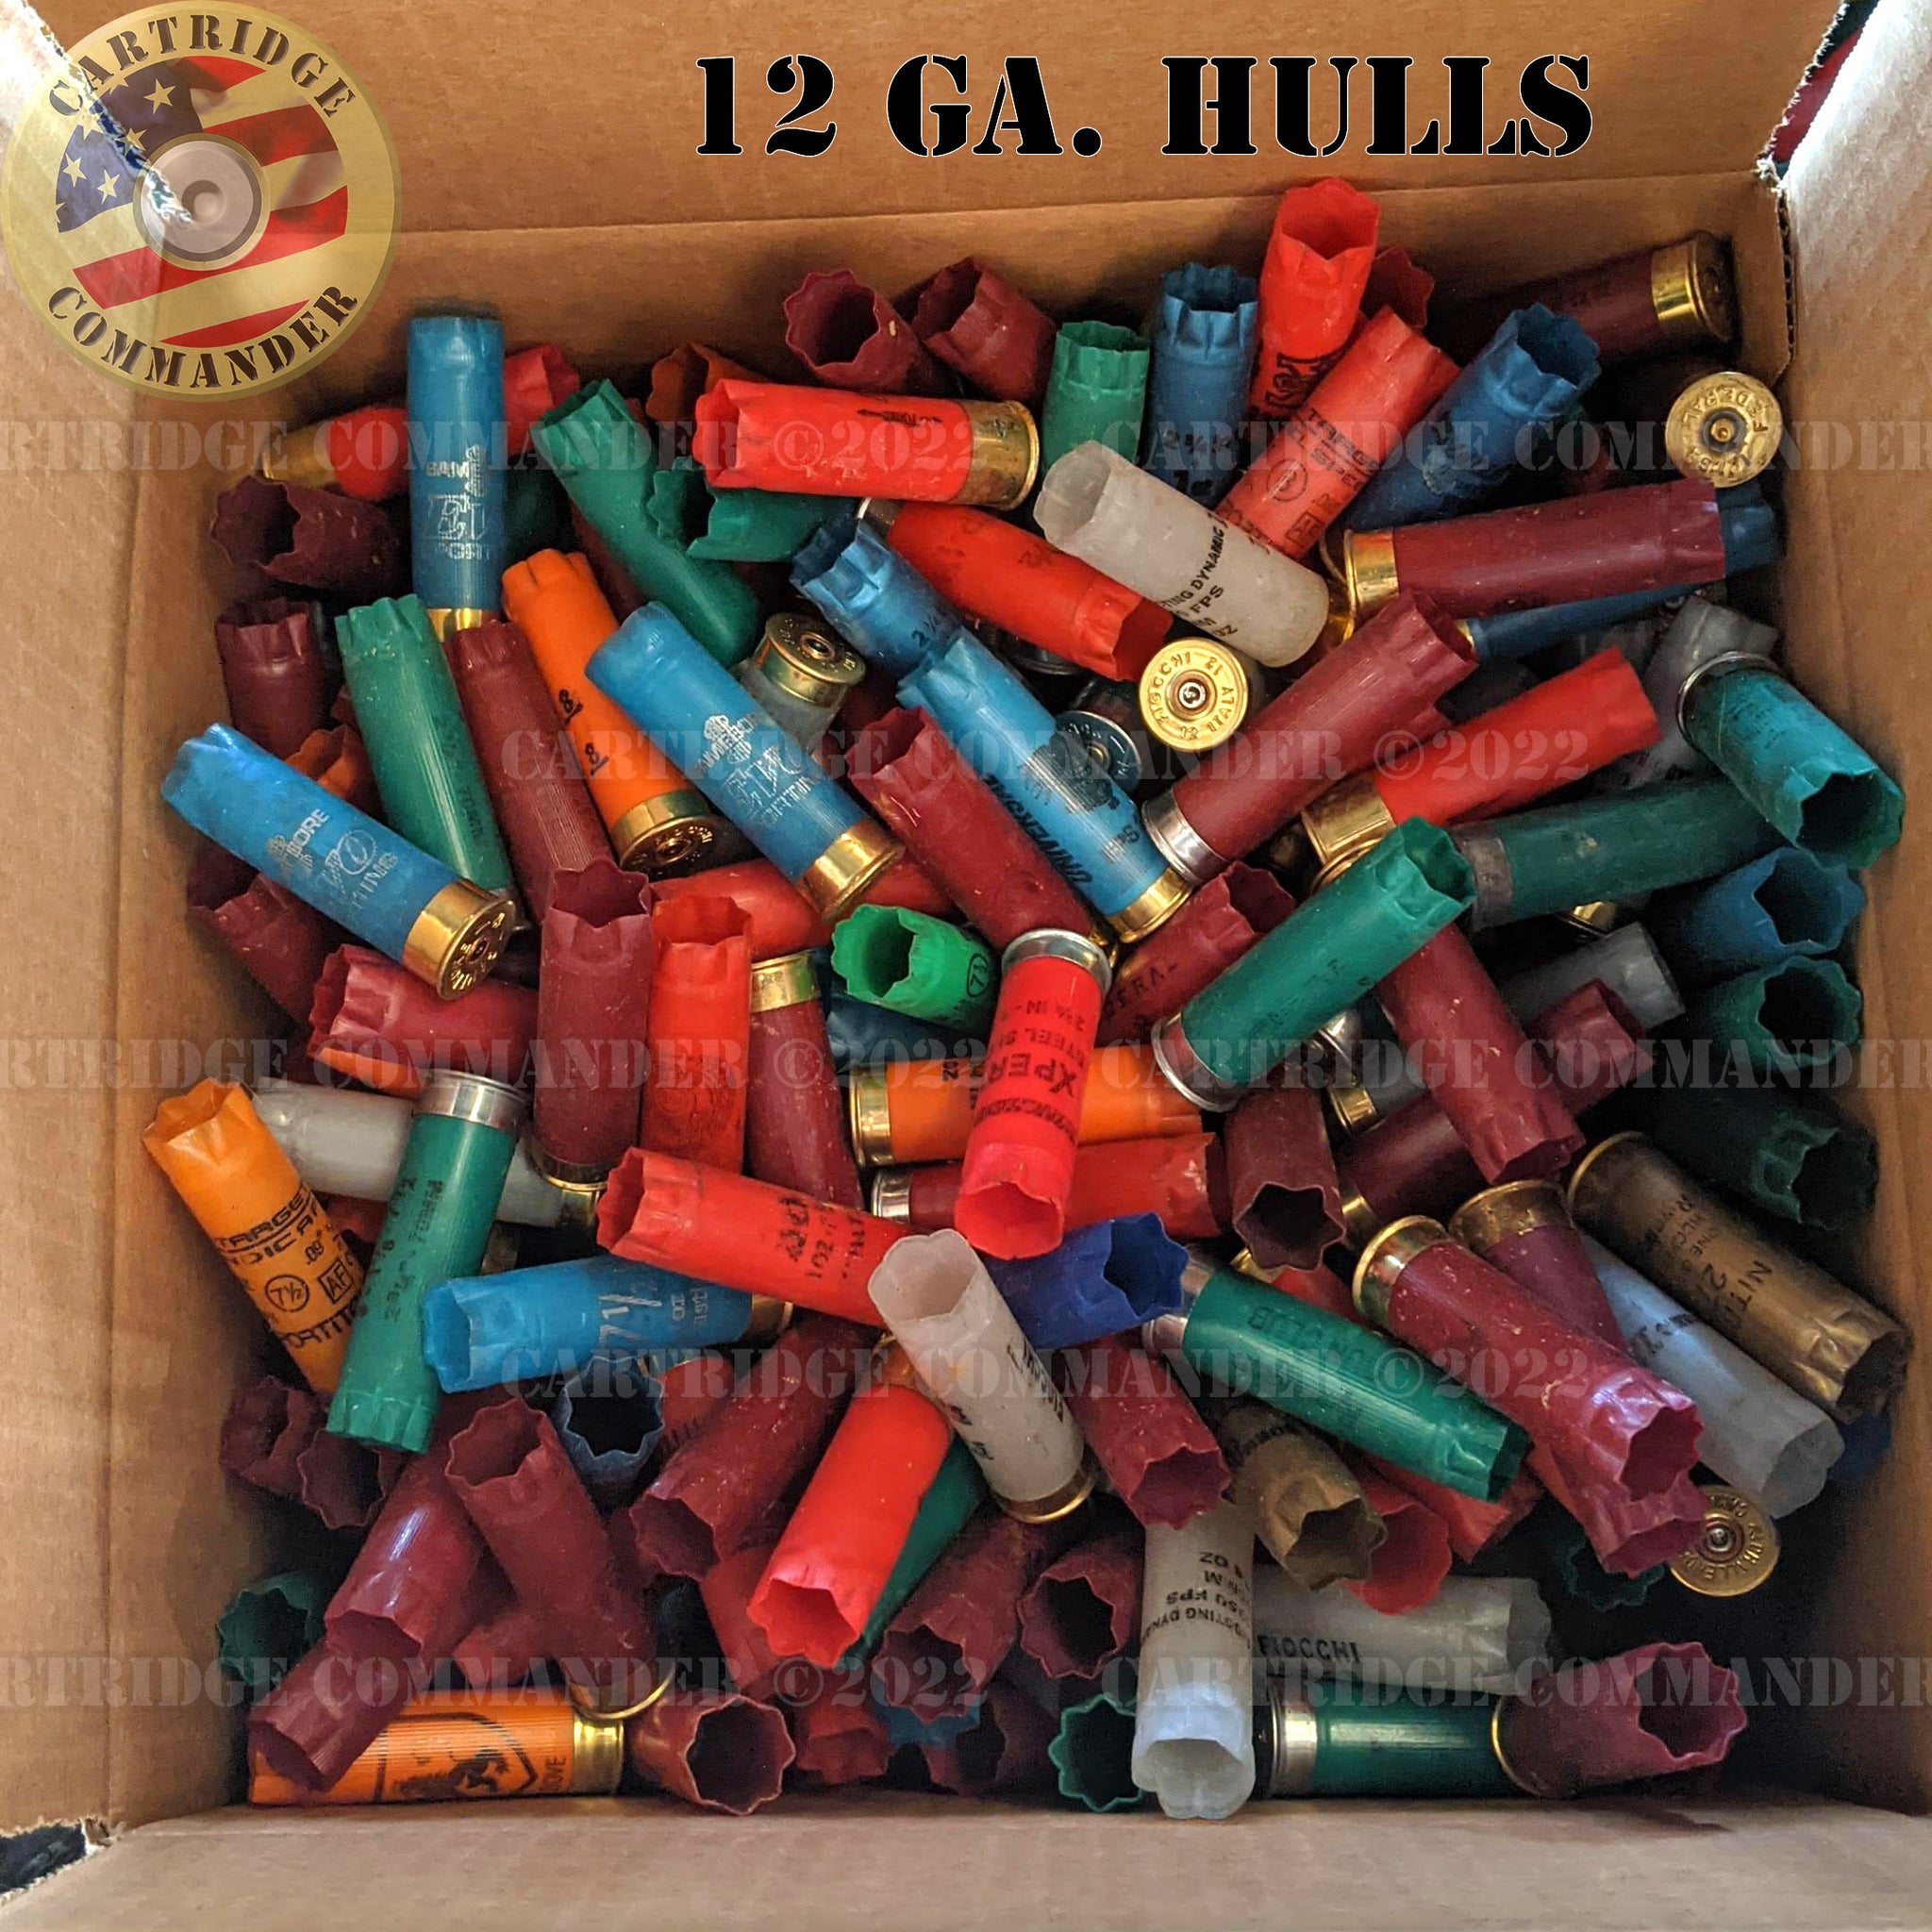 12 gauge shotgun shells empty hulls - MIXED colors - DIY craft